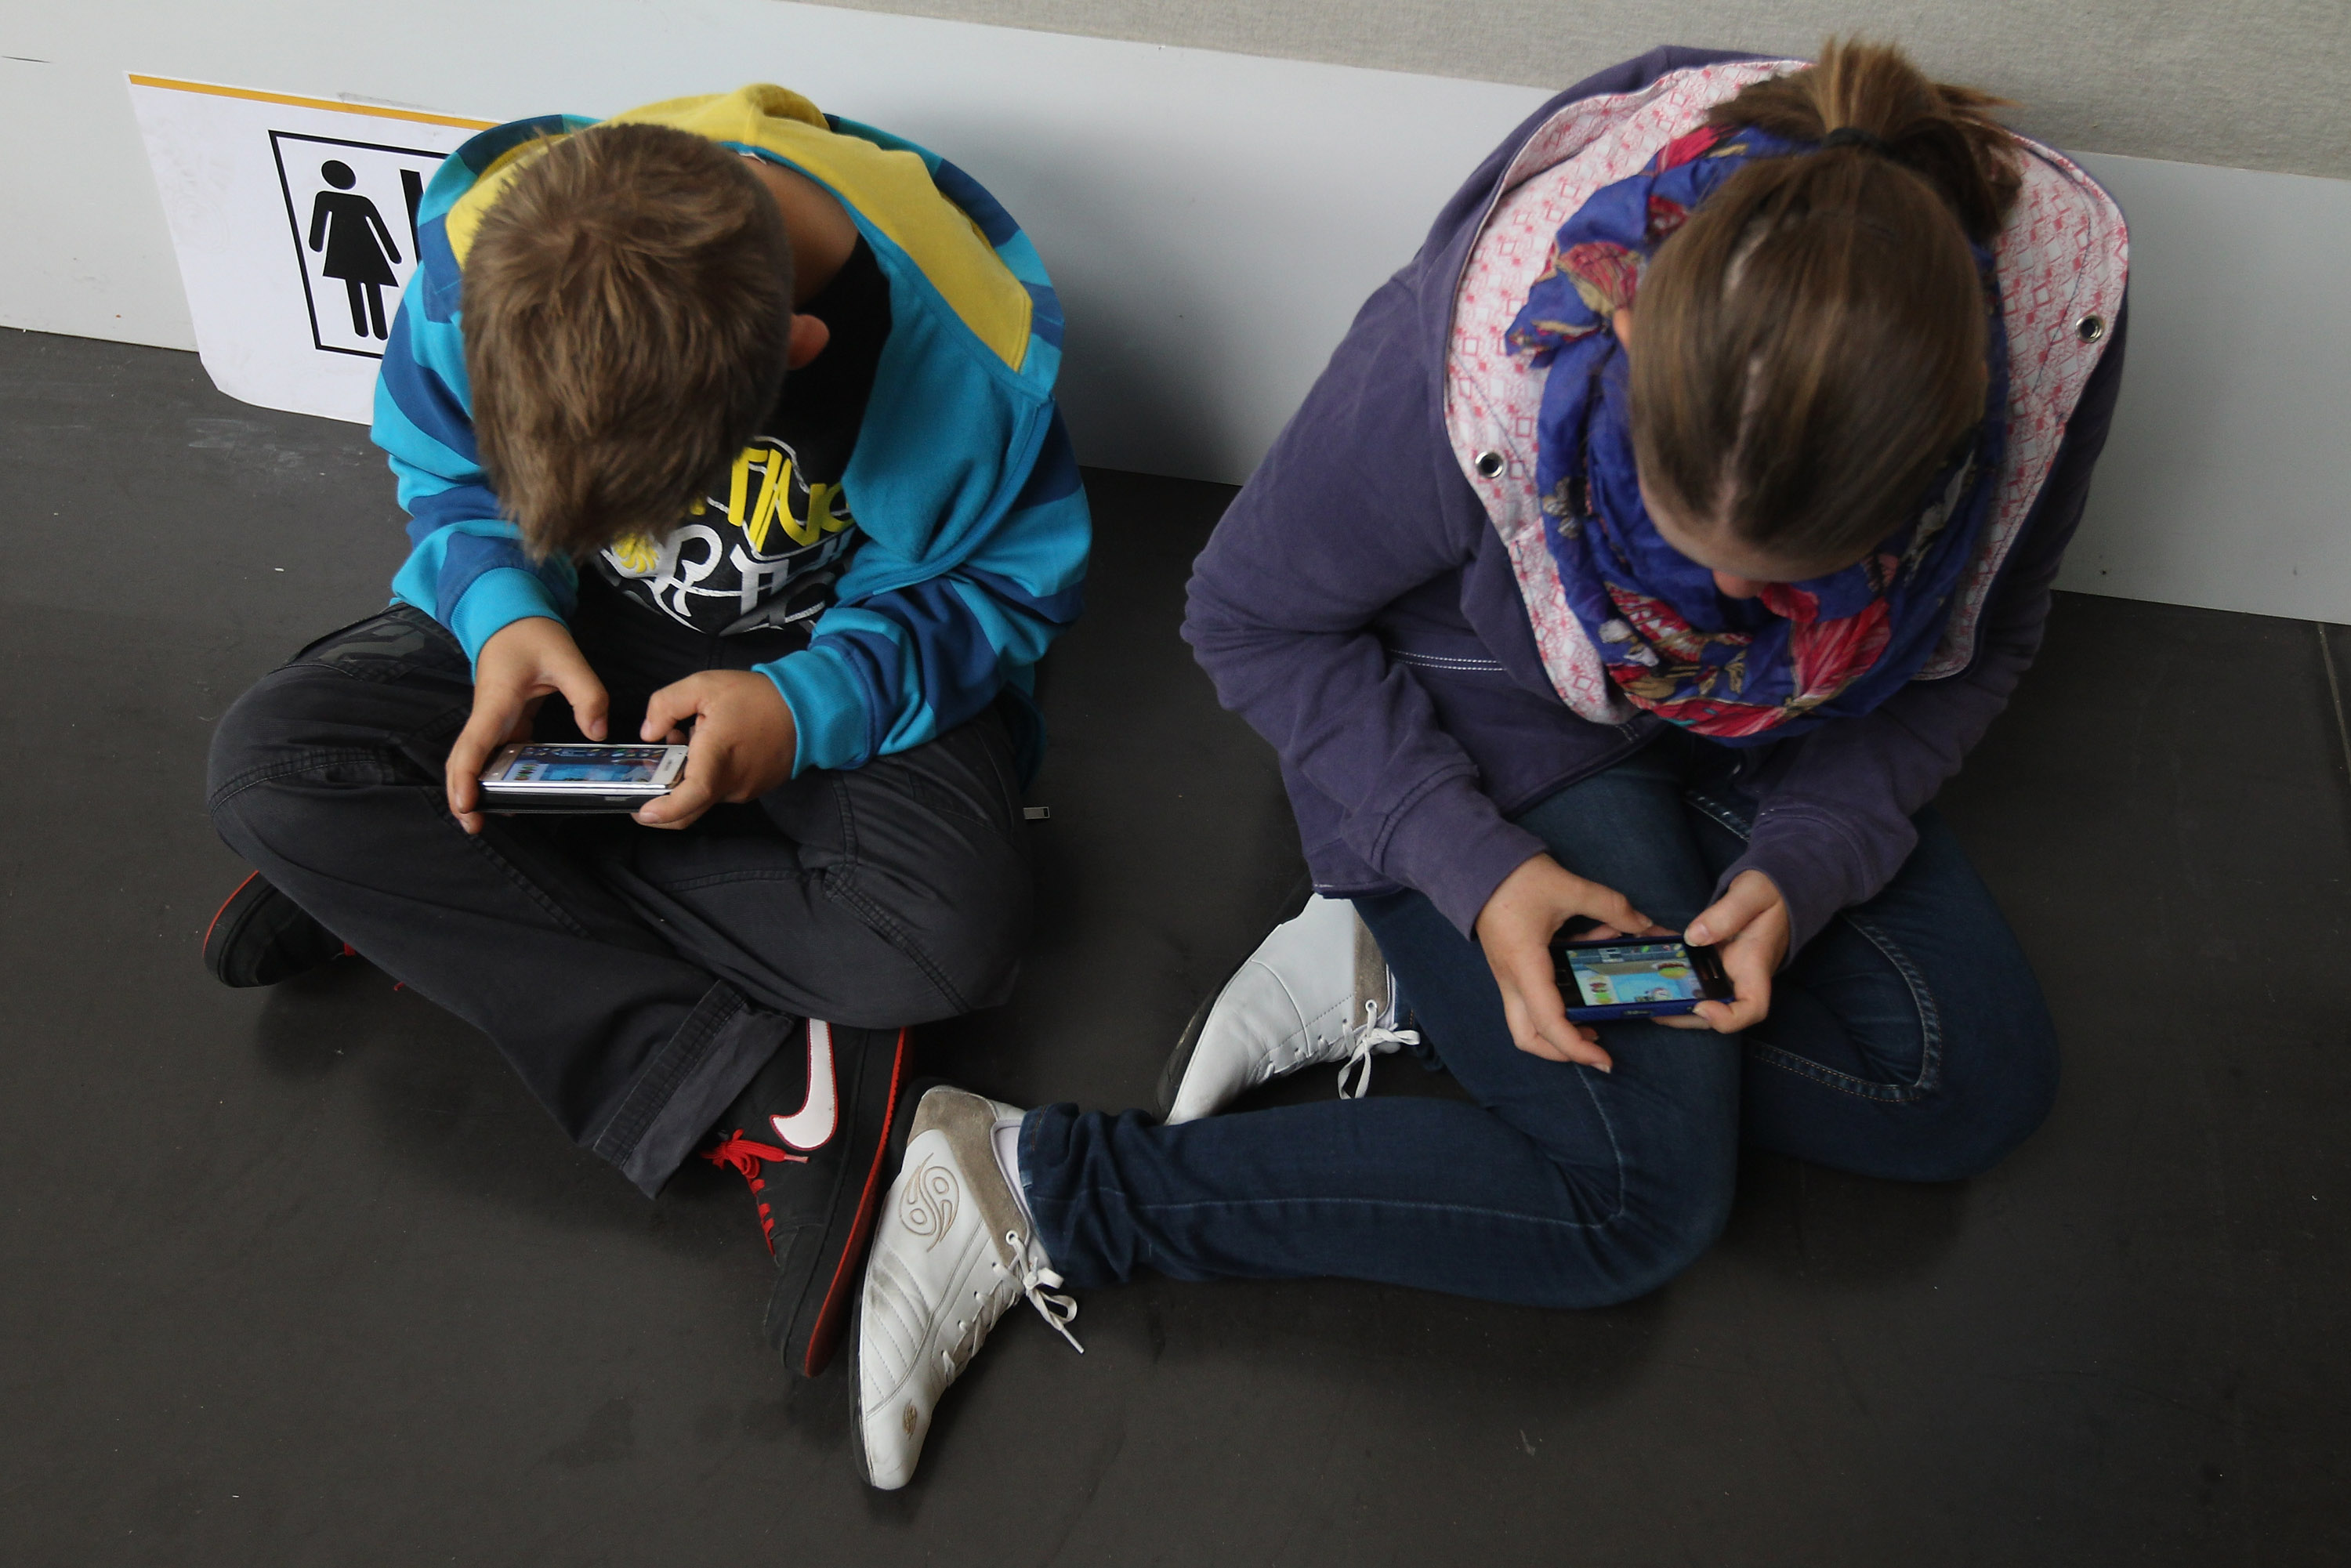 Handys bieten „viele Möglichkeiten“: Bildungsministerin gegen allgemeines Handyverbot an Schulen